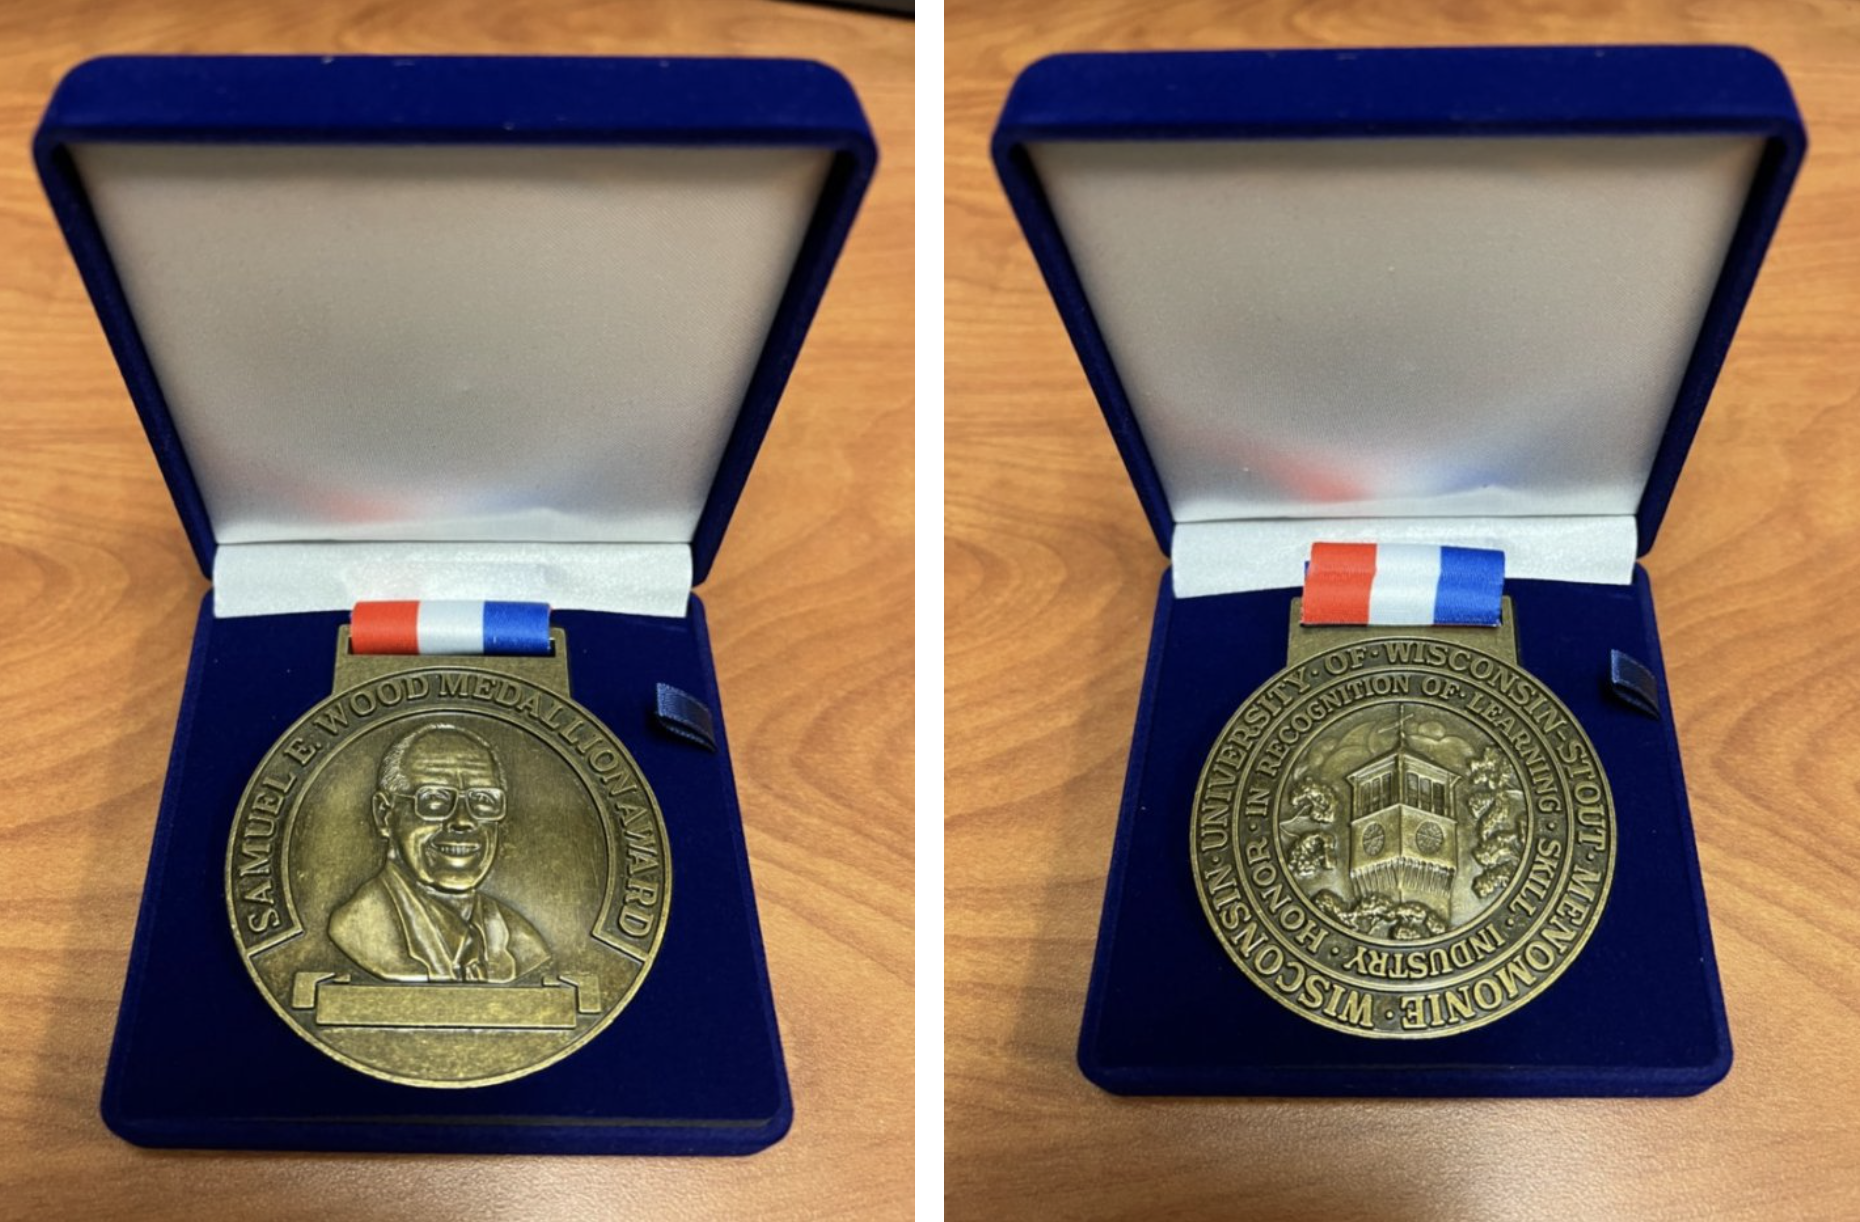 Samuel E. Wood Medallion Award